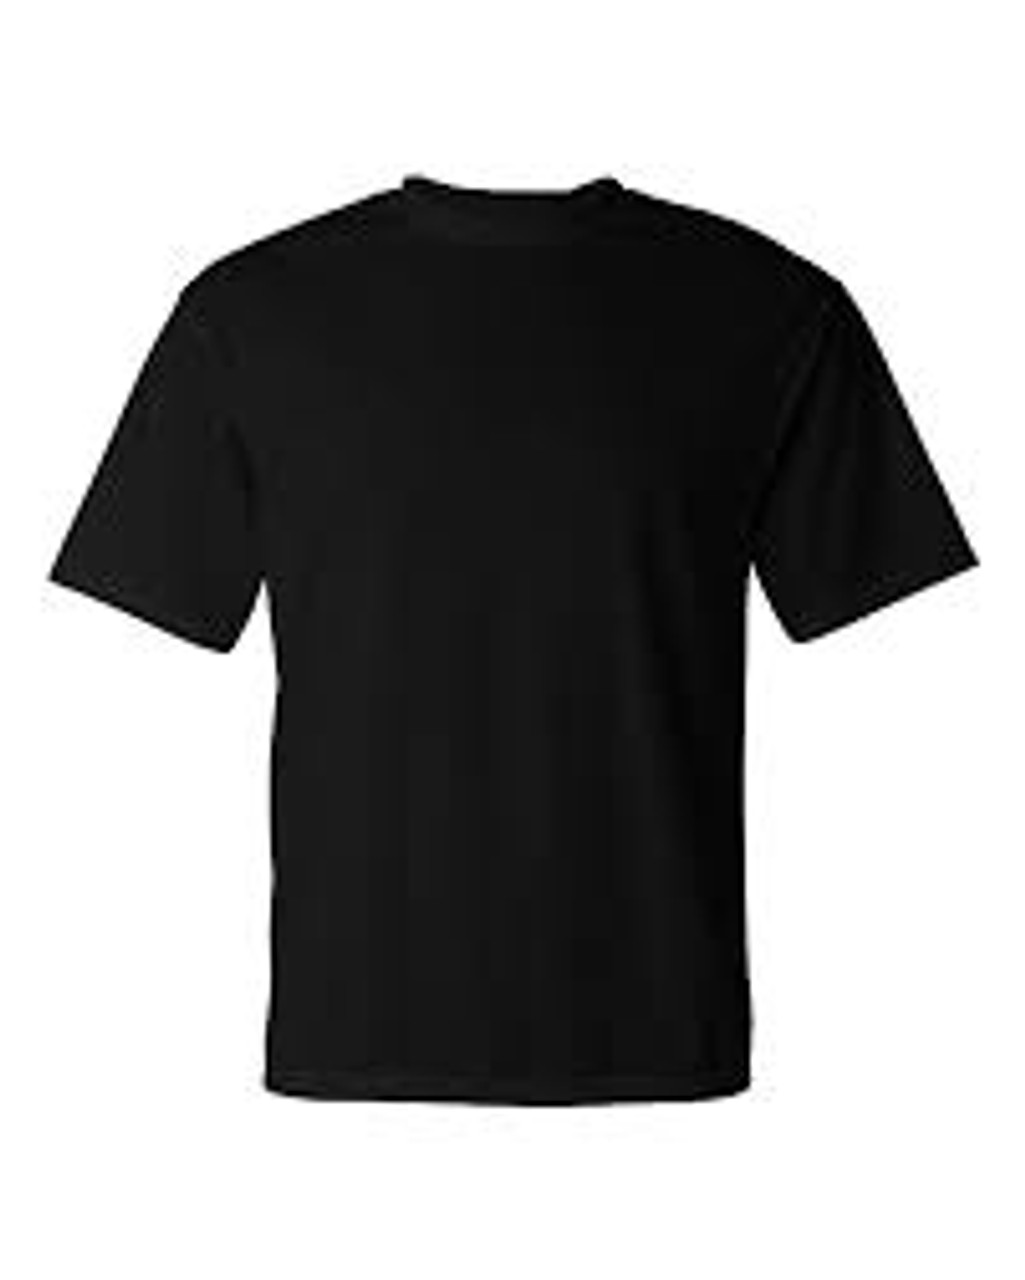 6T - Black - Gildan - Custom T-shirt